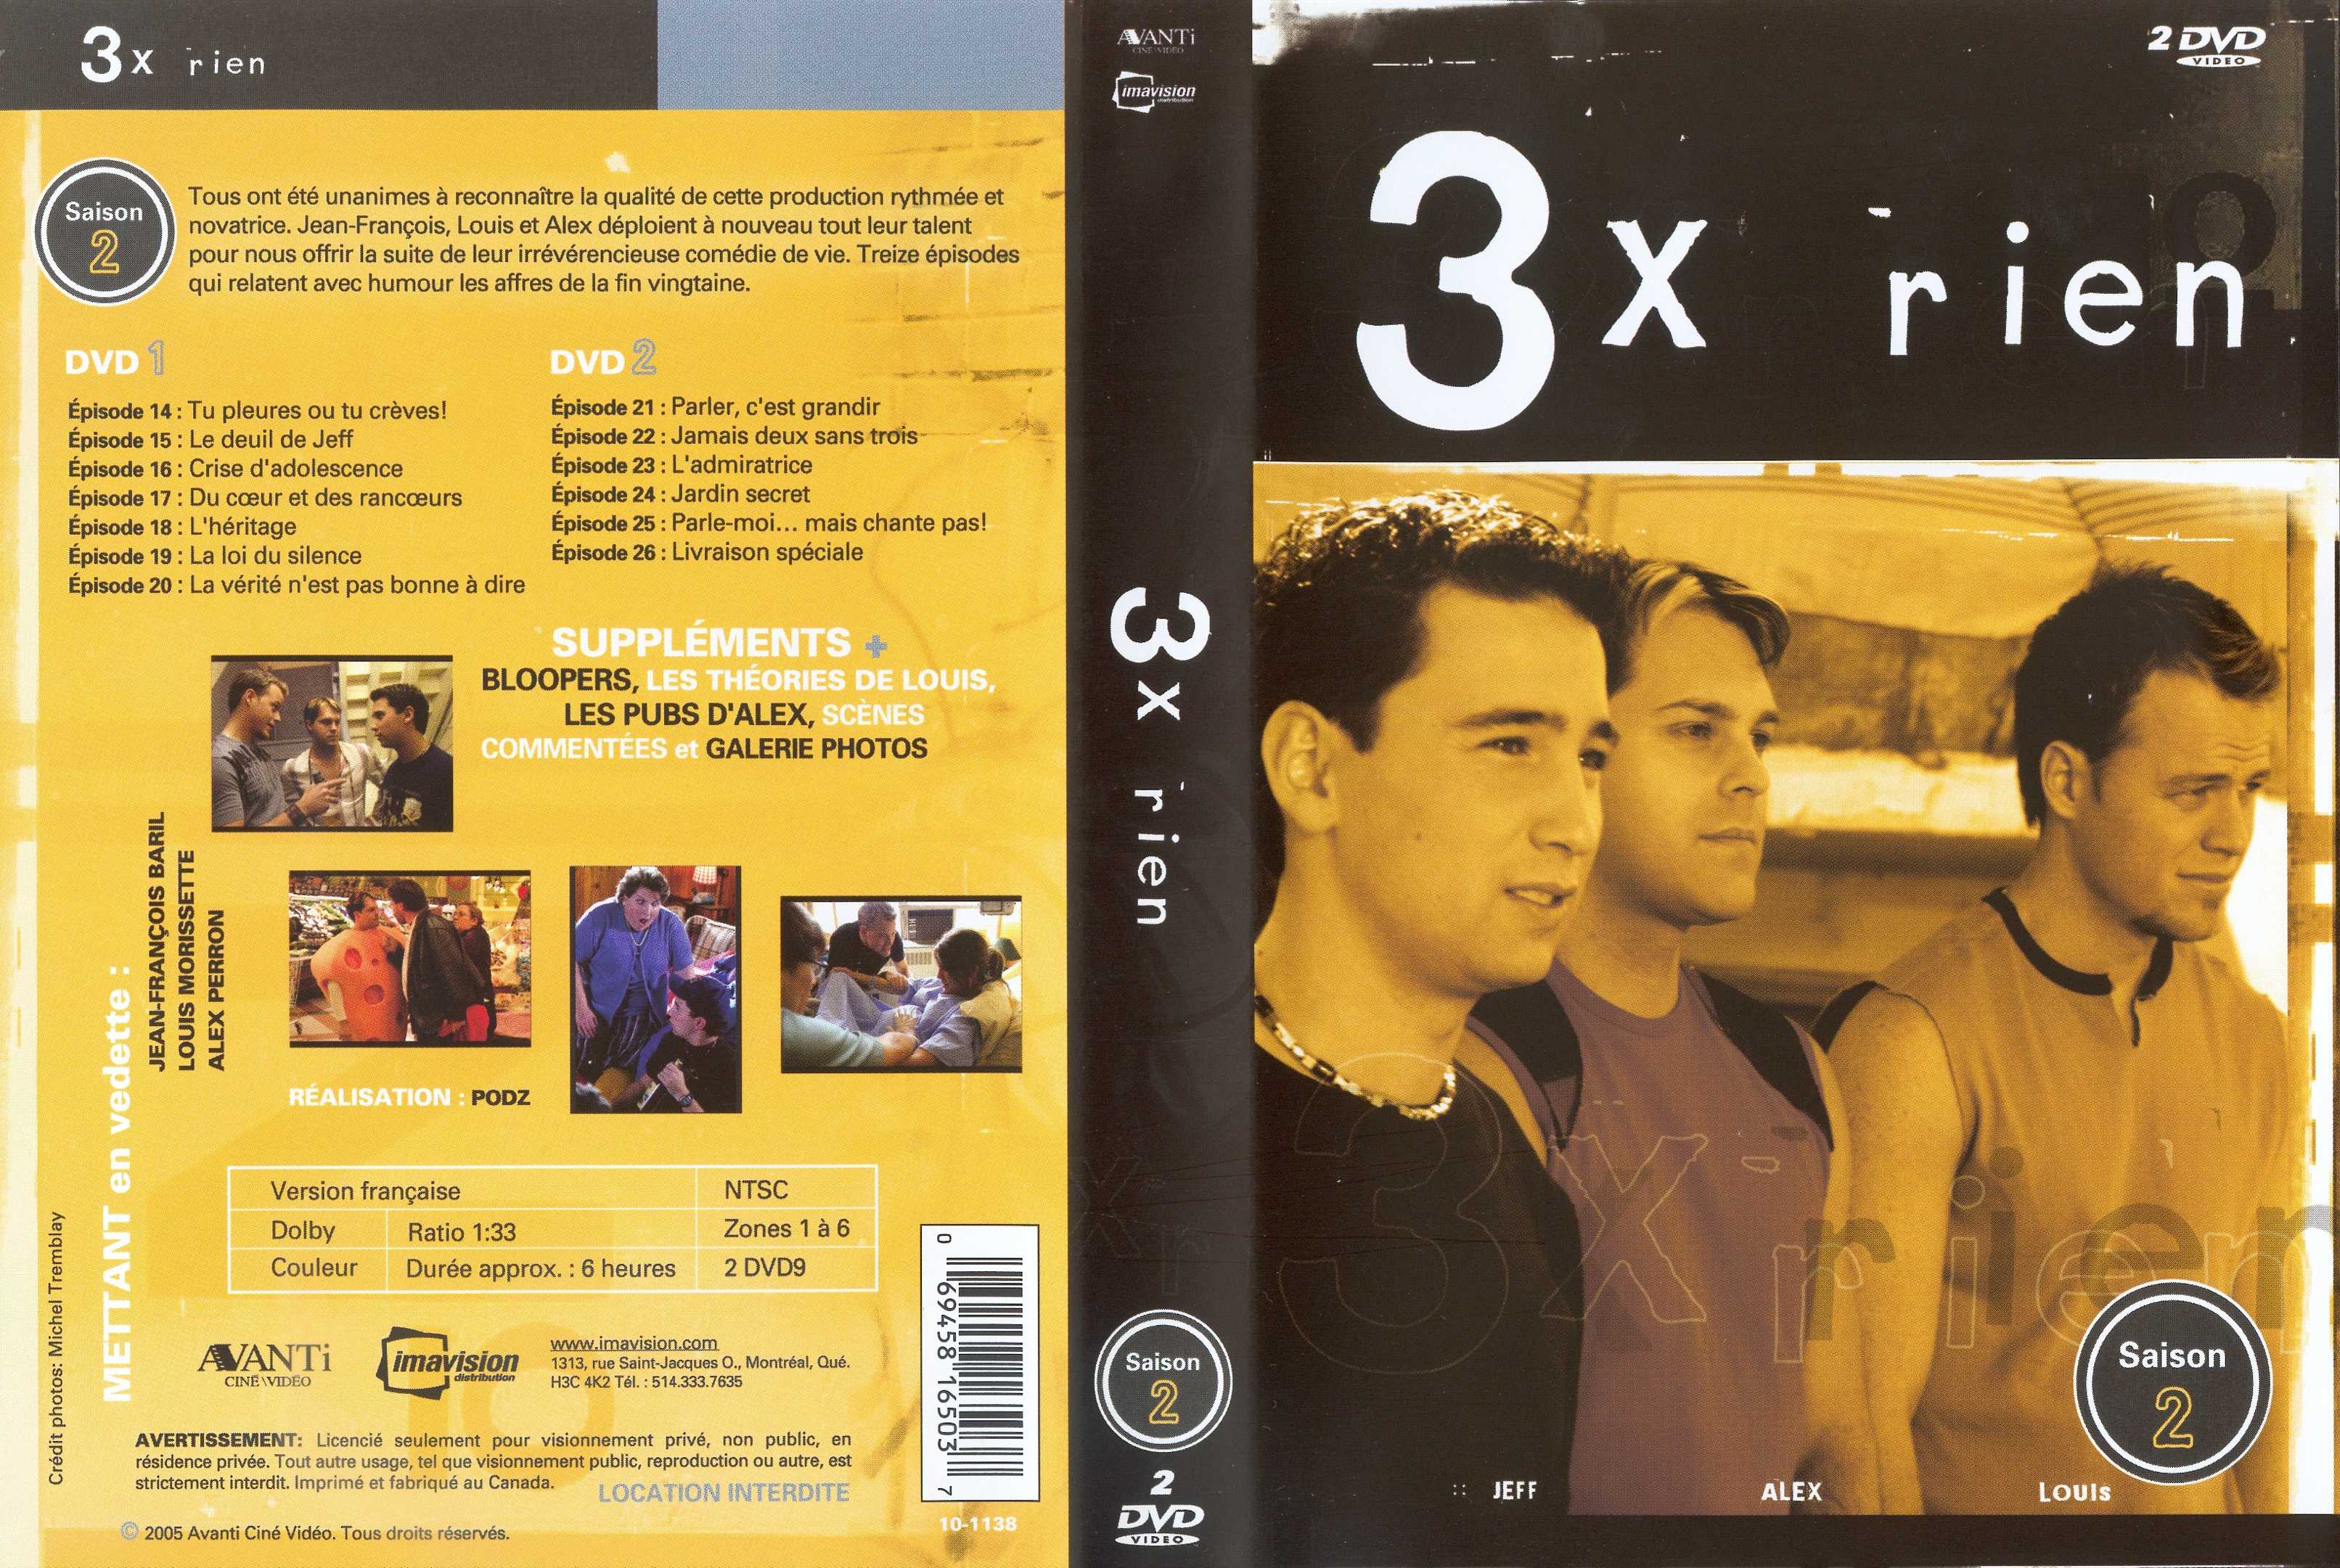 Jaquette DVD 3x rien saison 2